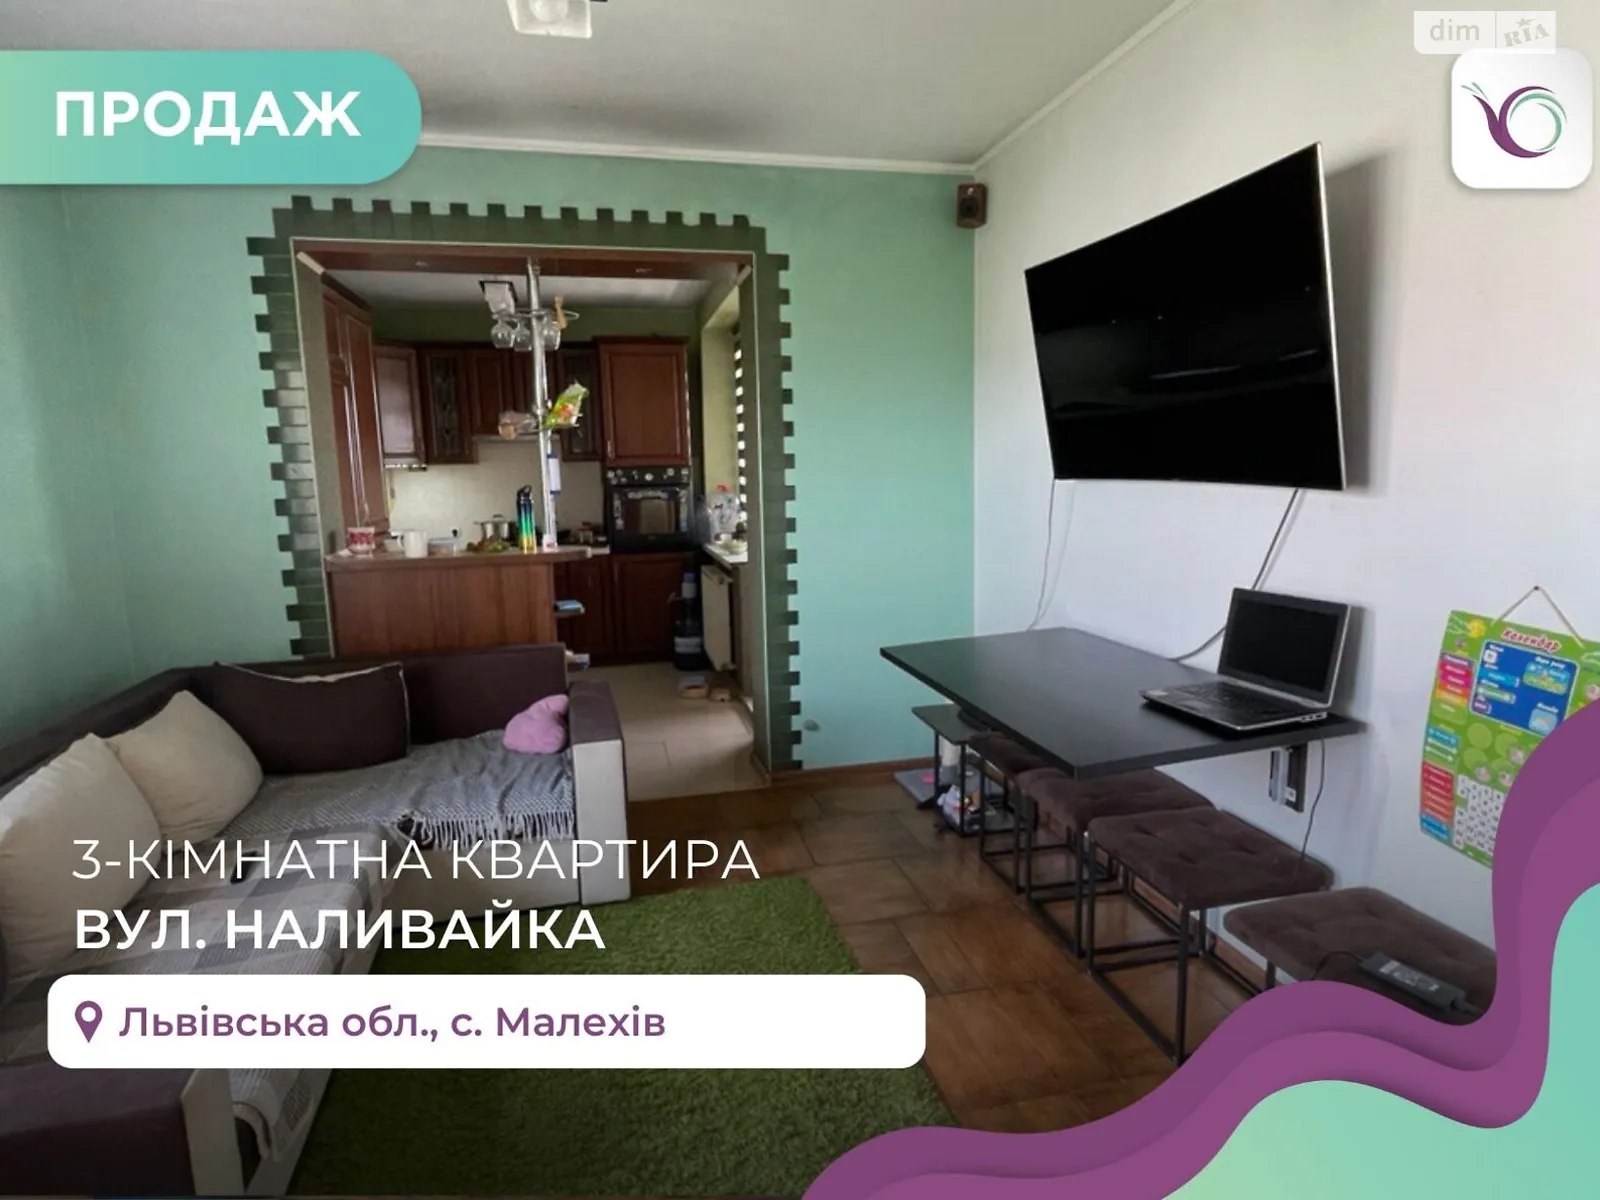 Продається 3-кімнатна квартира 69 кв. м у Малехові, цена: 72000 $ - фото 1